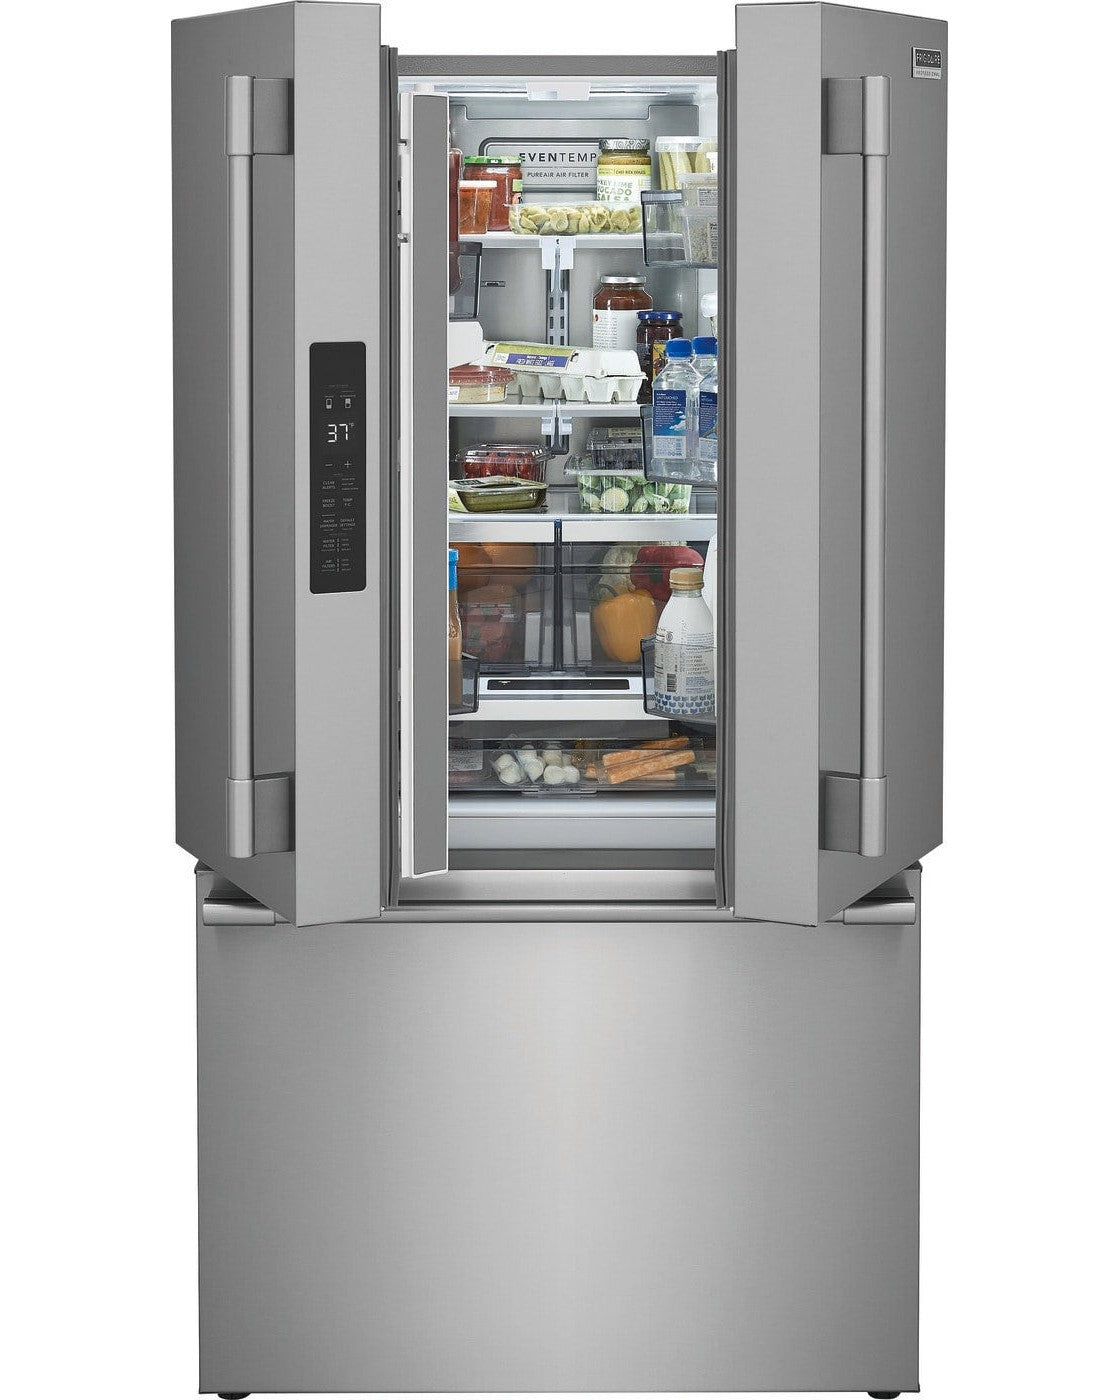 FRIGIDAIRE PRFG2383AF Professional 23.3 Cu. Ft. French Door Counter-Depth Refrigerator